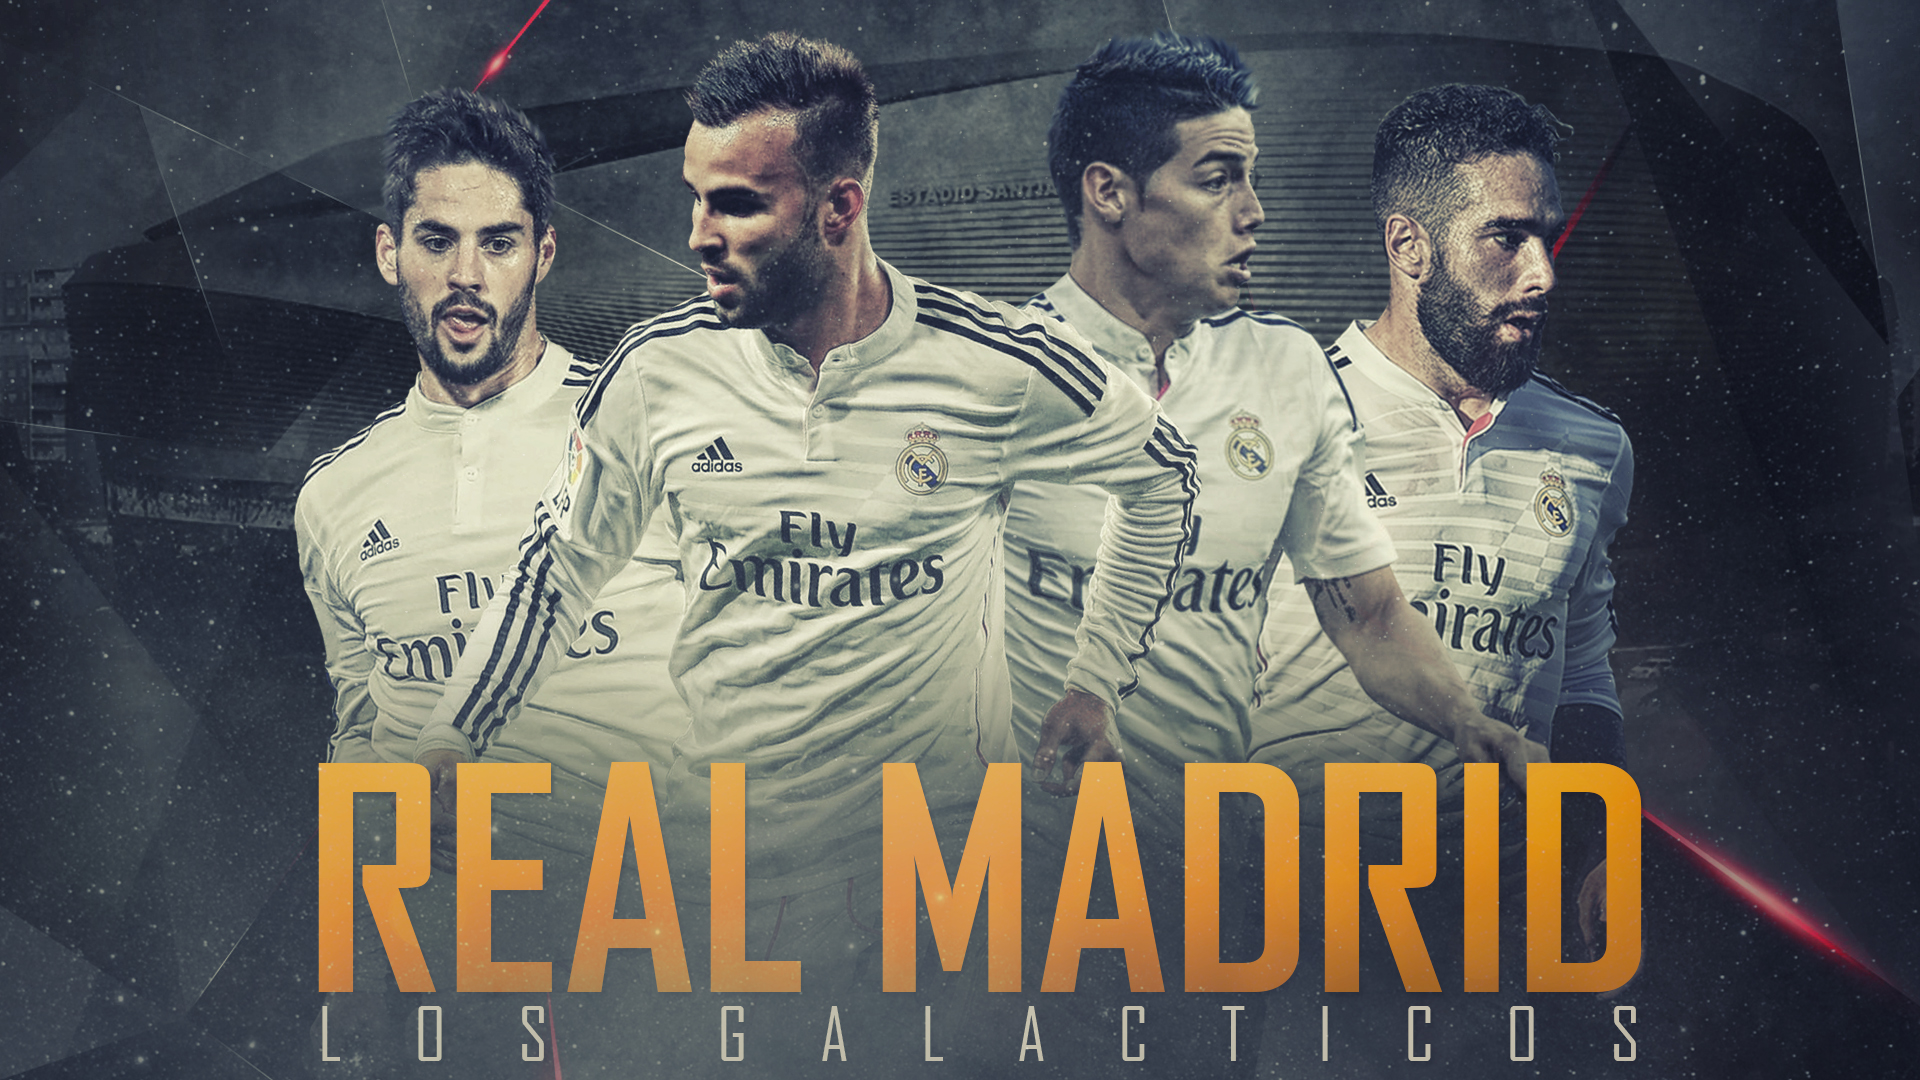 Real Madrid Los Galacticos By Kerimov23 On DeviantArt